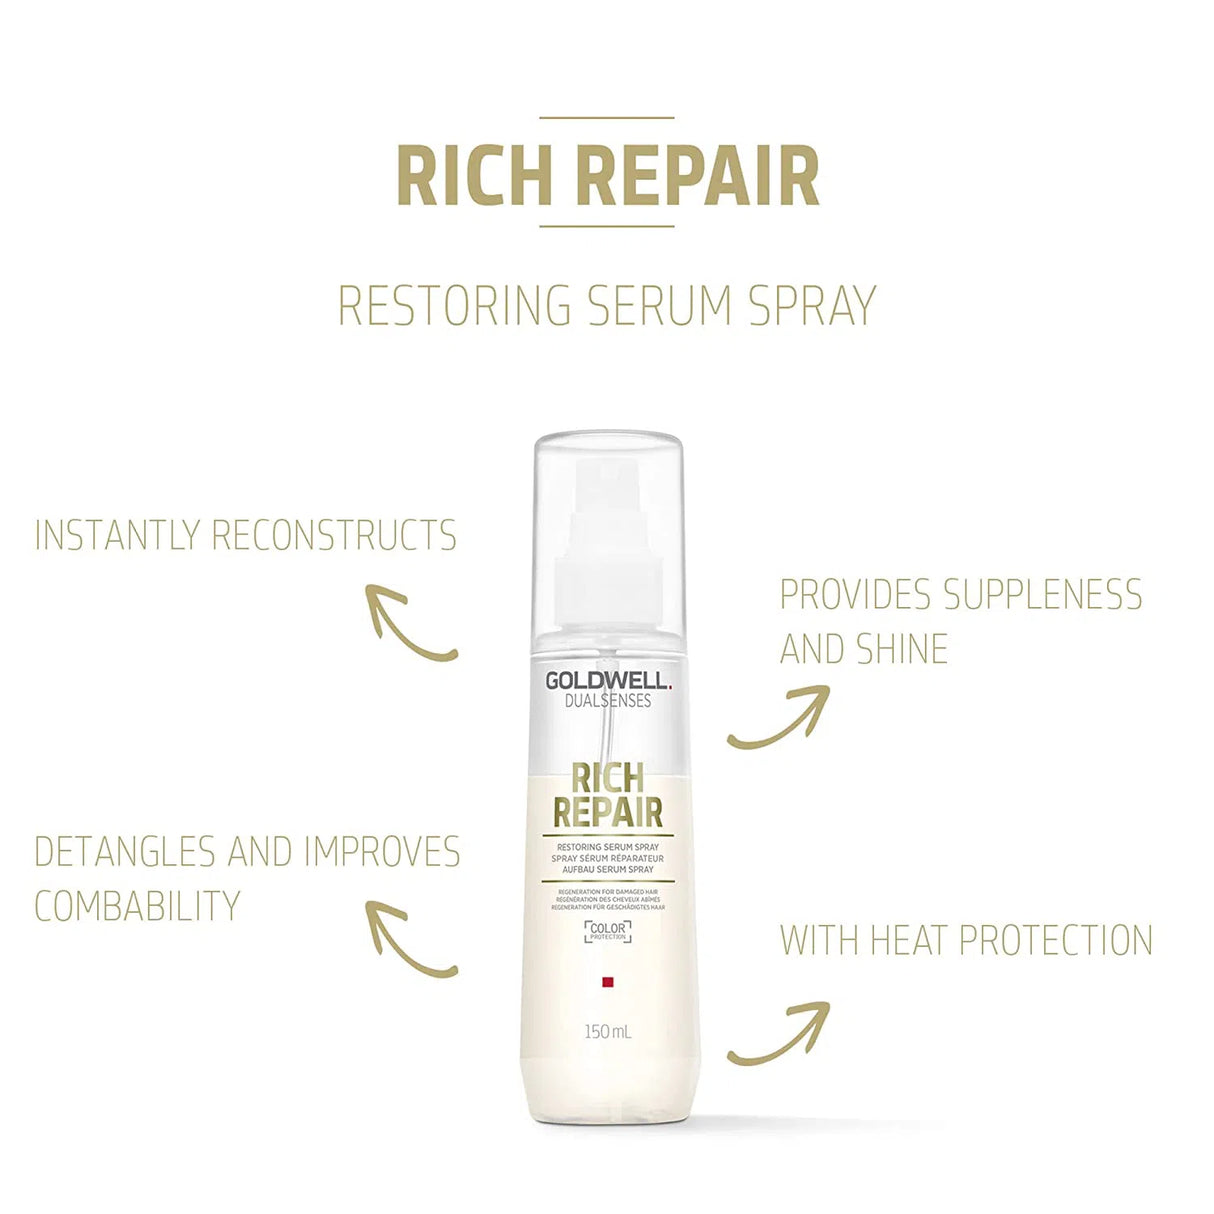 Rich Repair Restoring Serum Spray